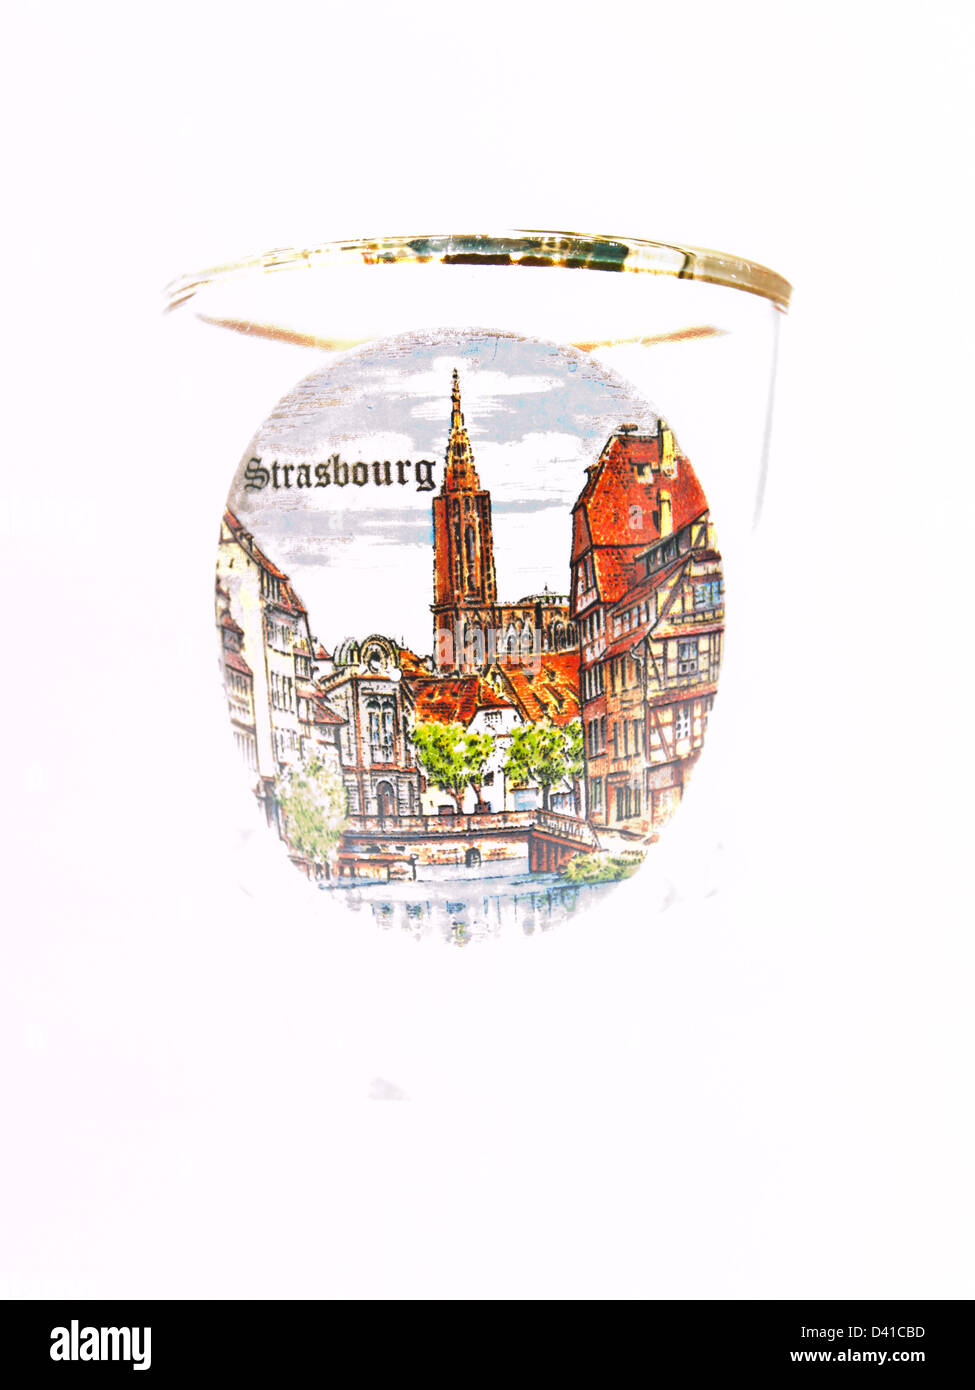 Un pack shot verre de Strasbourg monument isolé sur fond blanc Banque D'Images